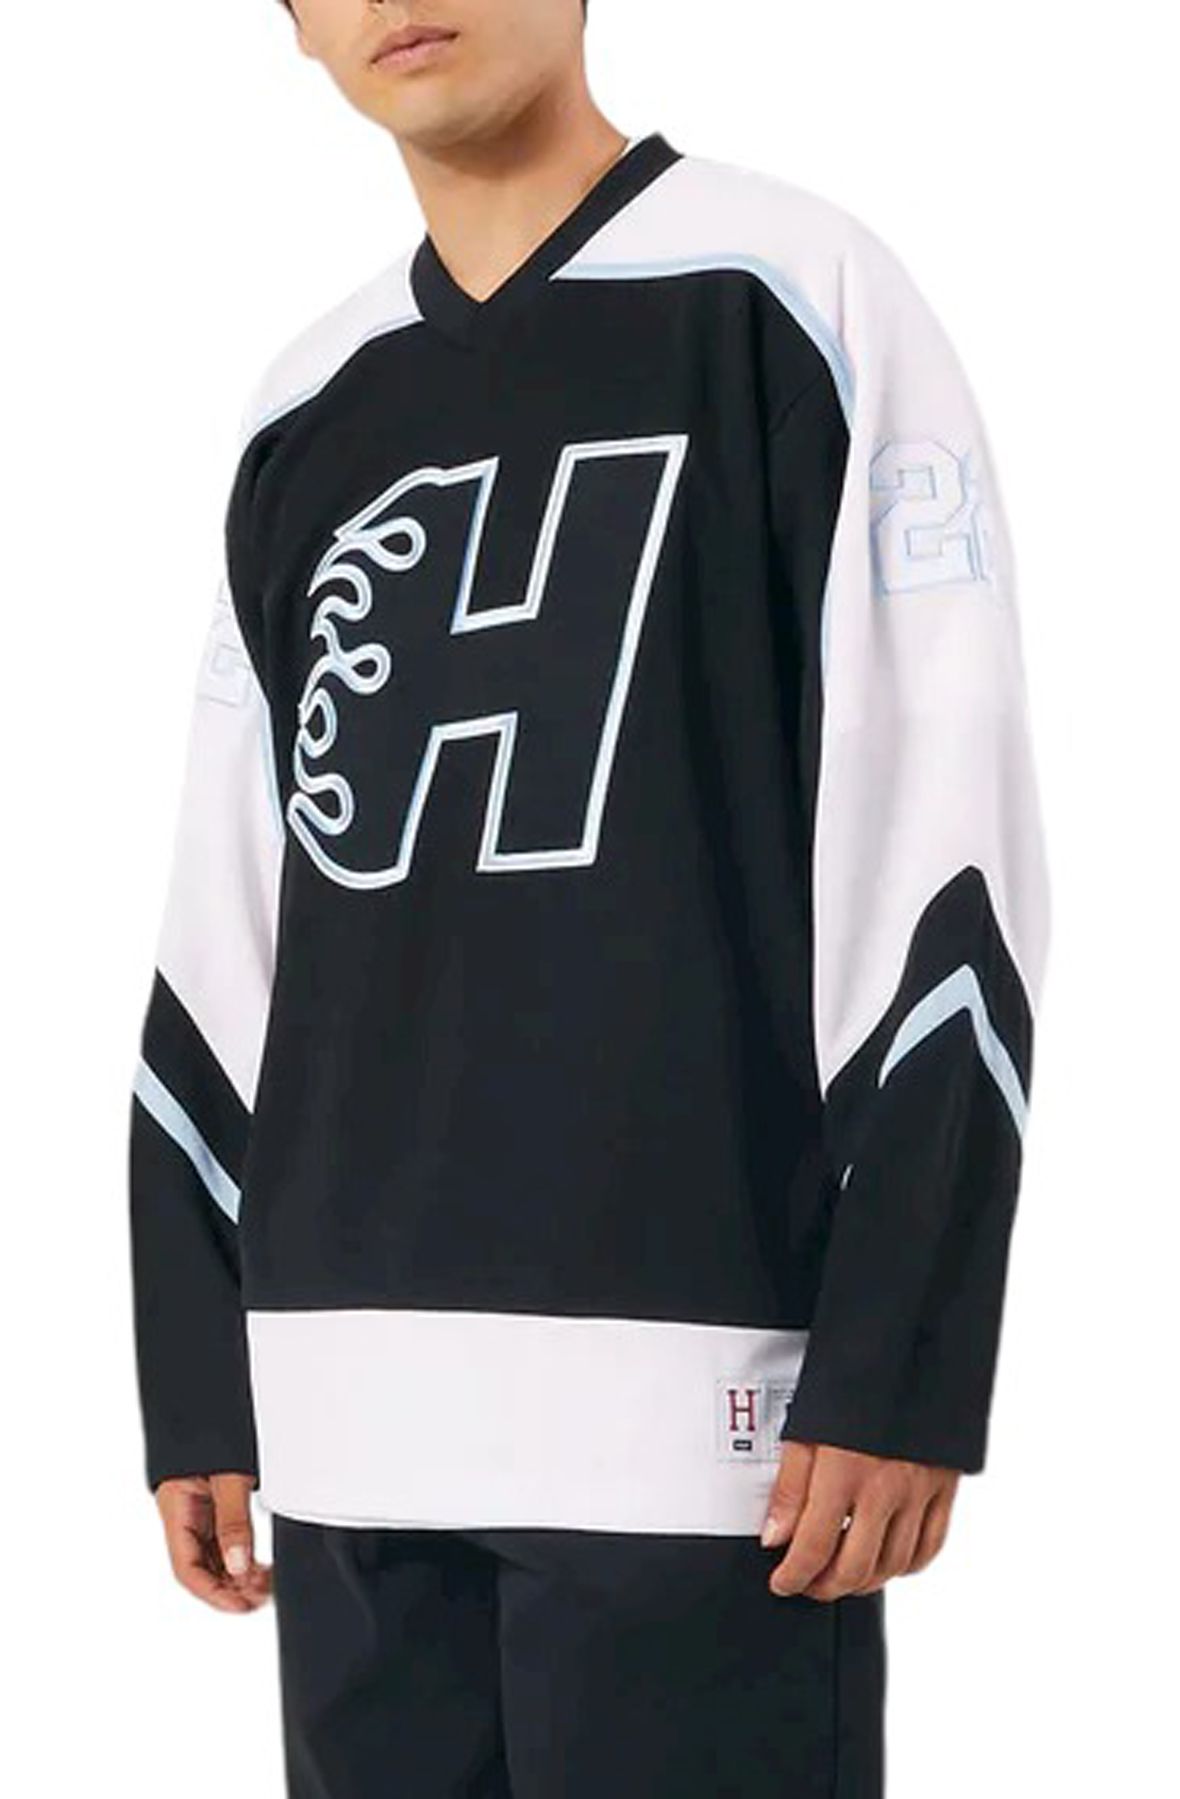  HUF Enforcer Hockey Jersey for Men, White, Small